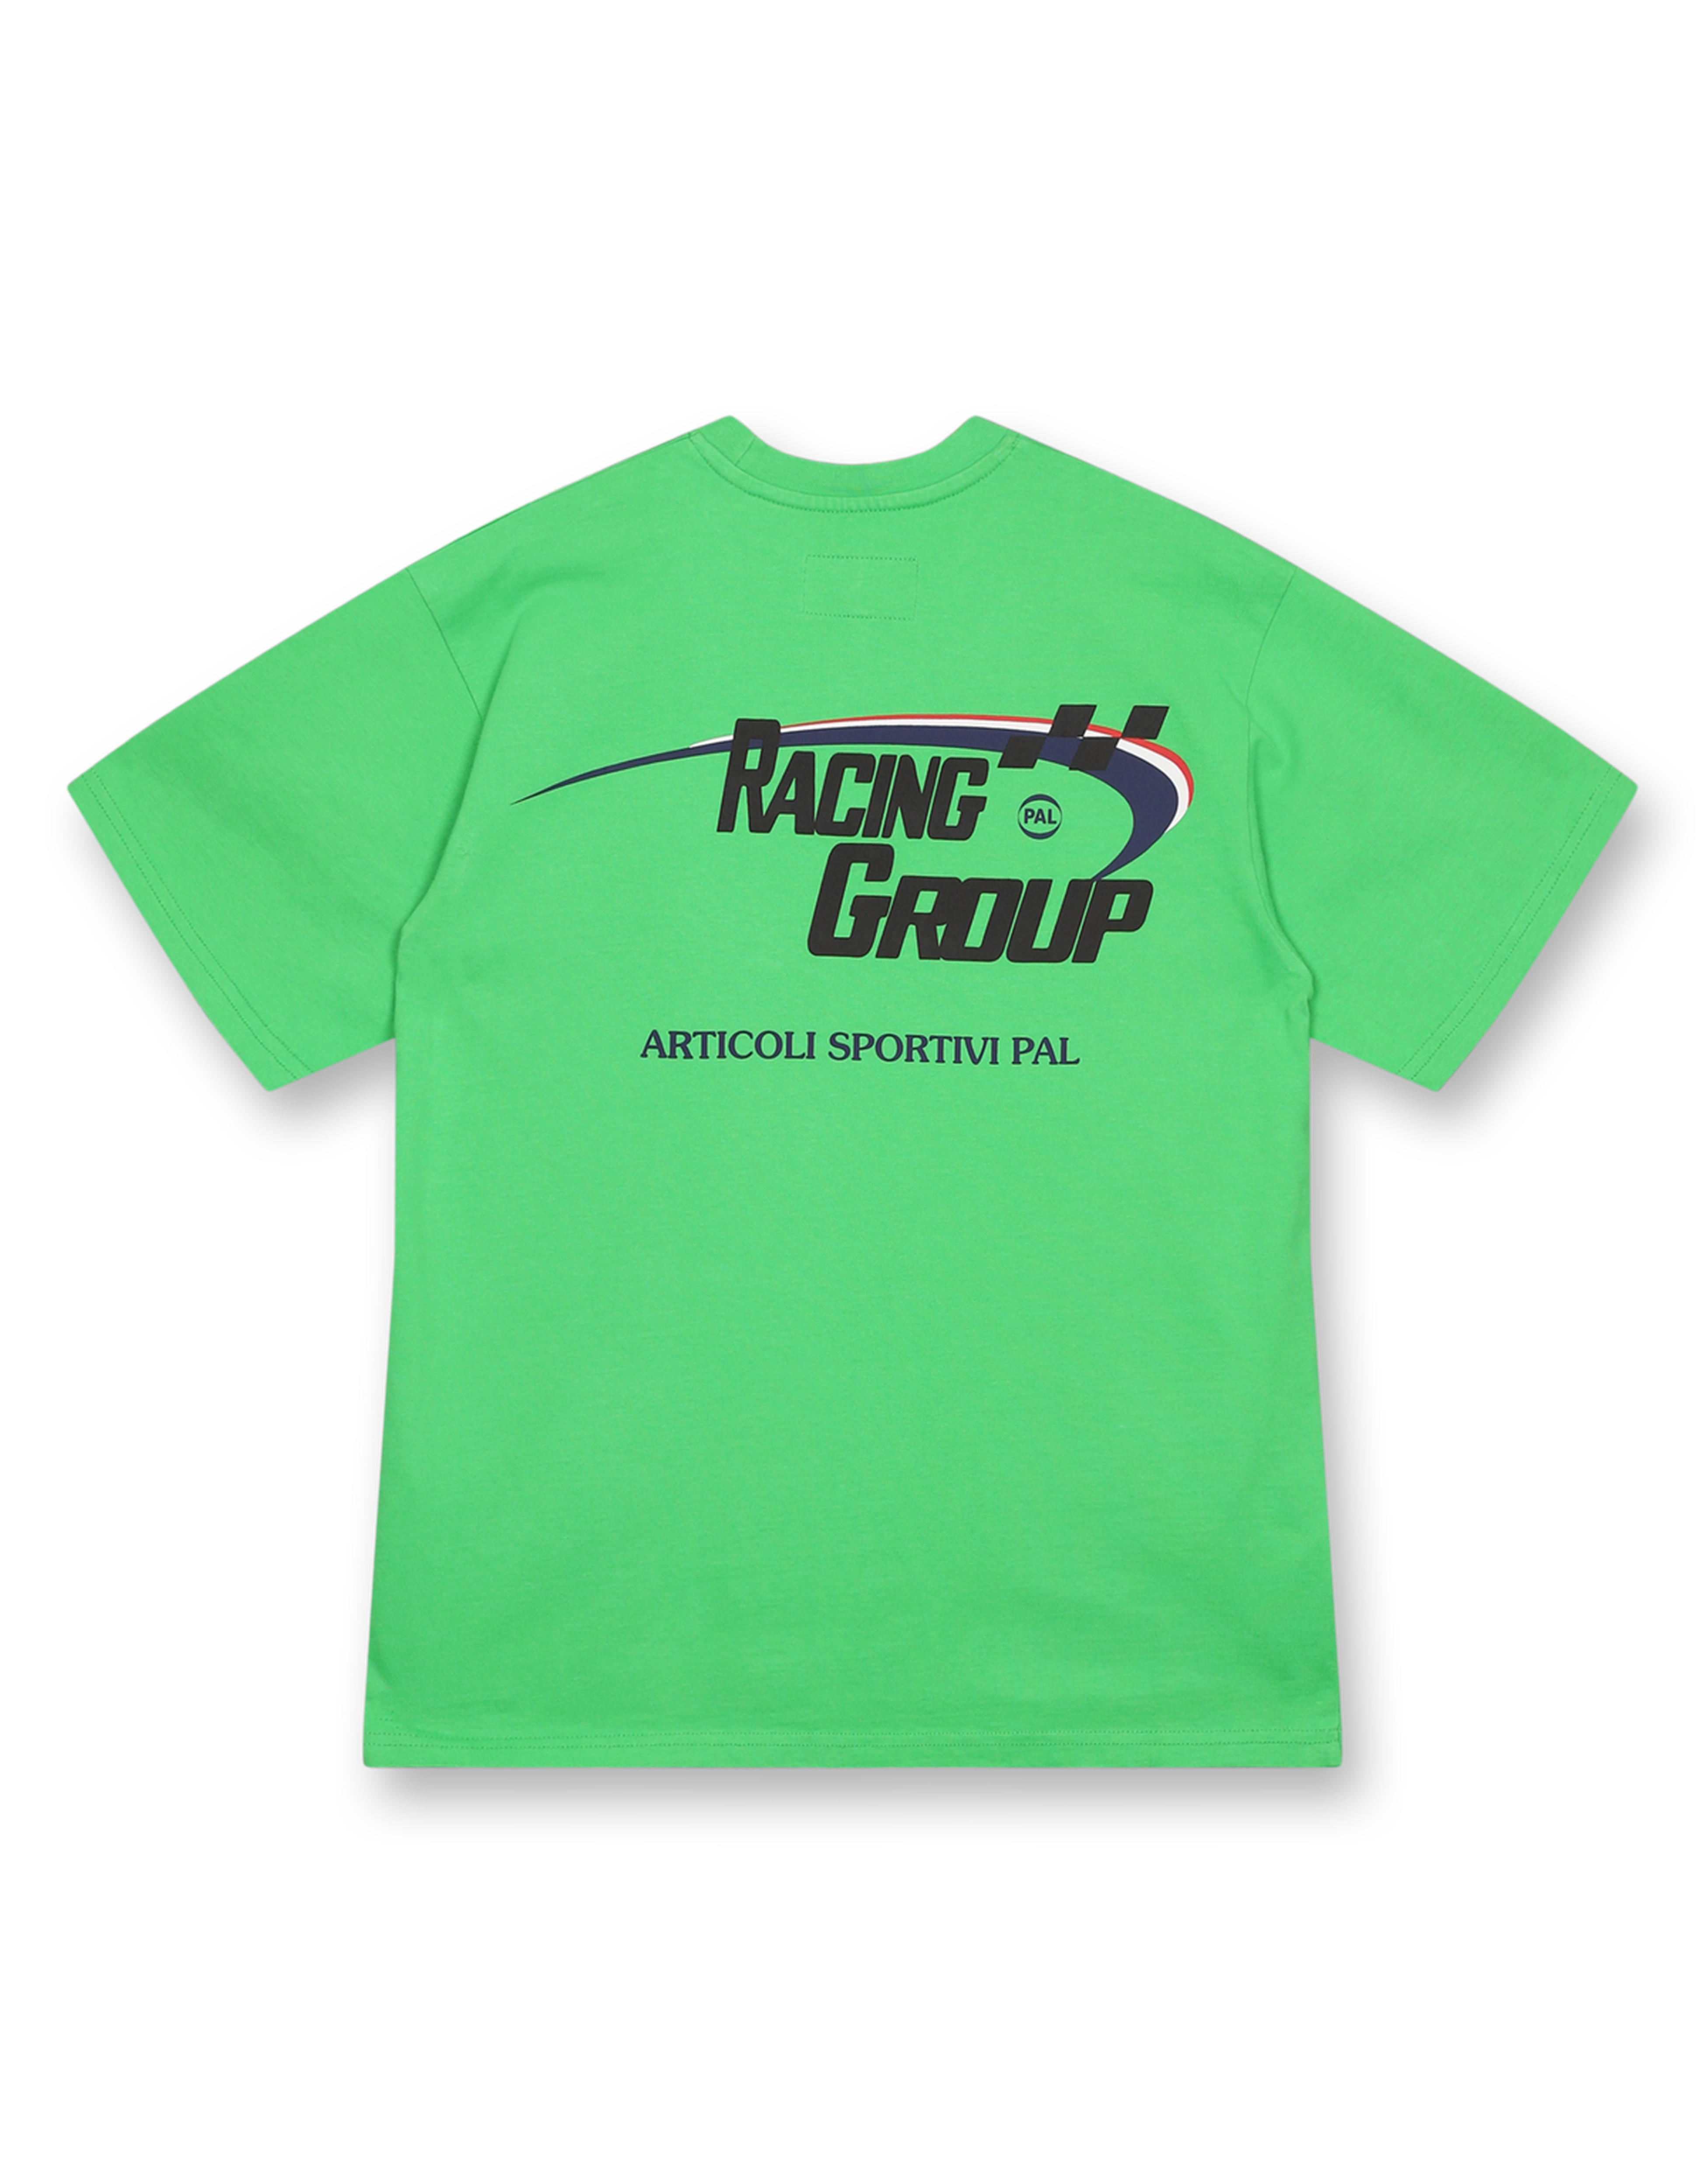 Racing Group T-shirt